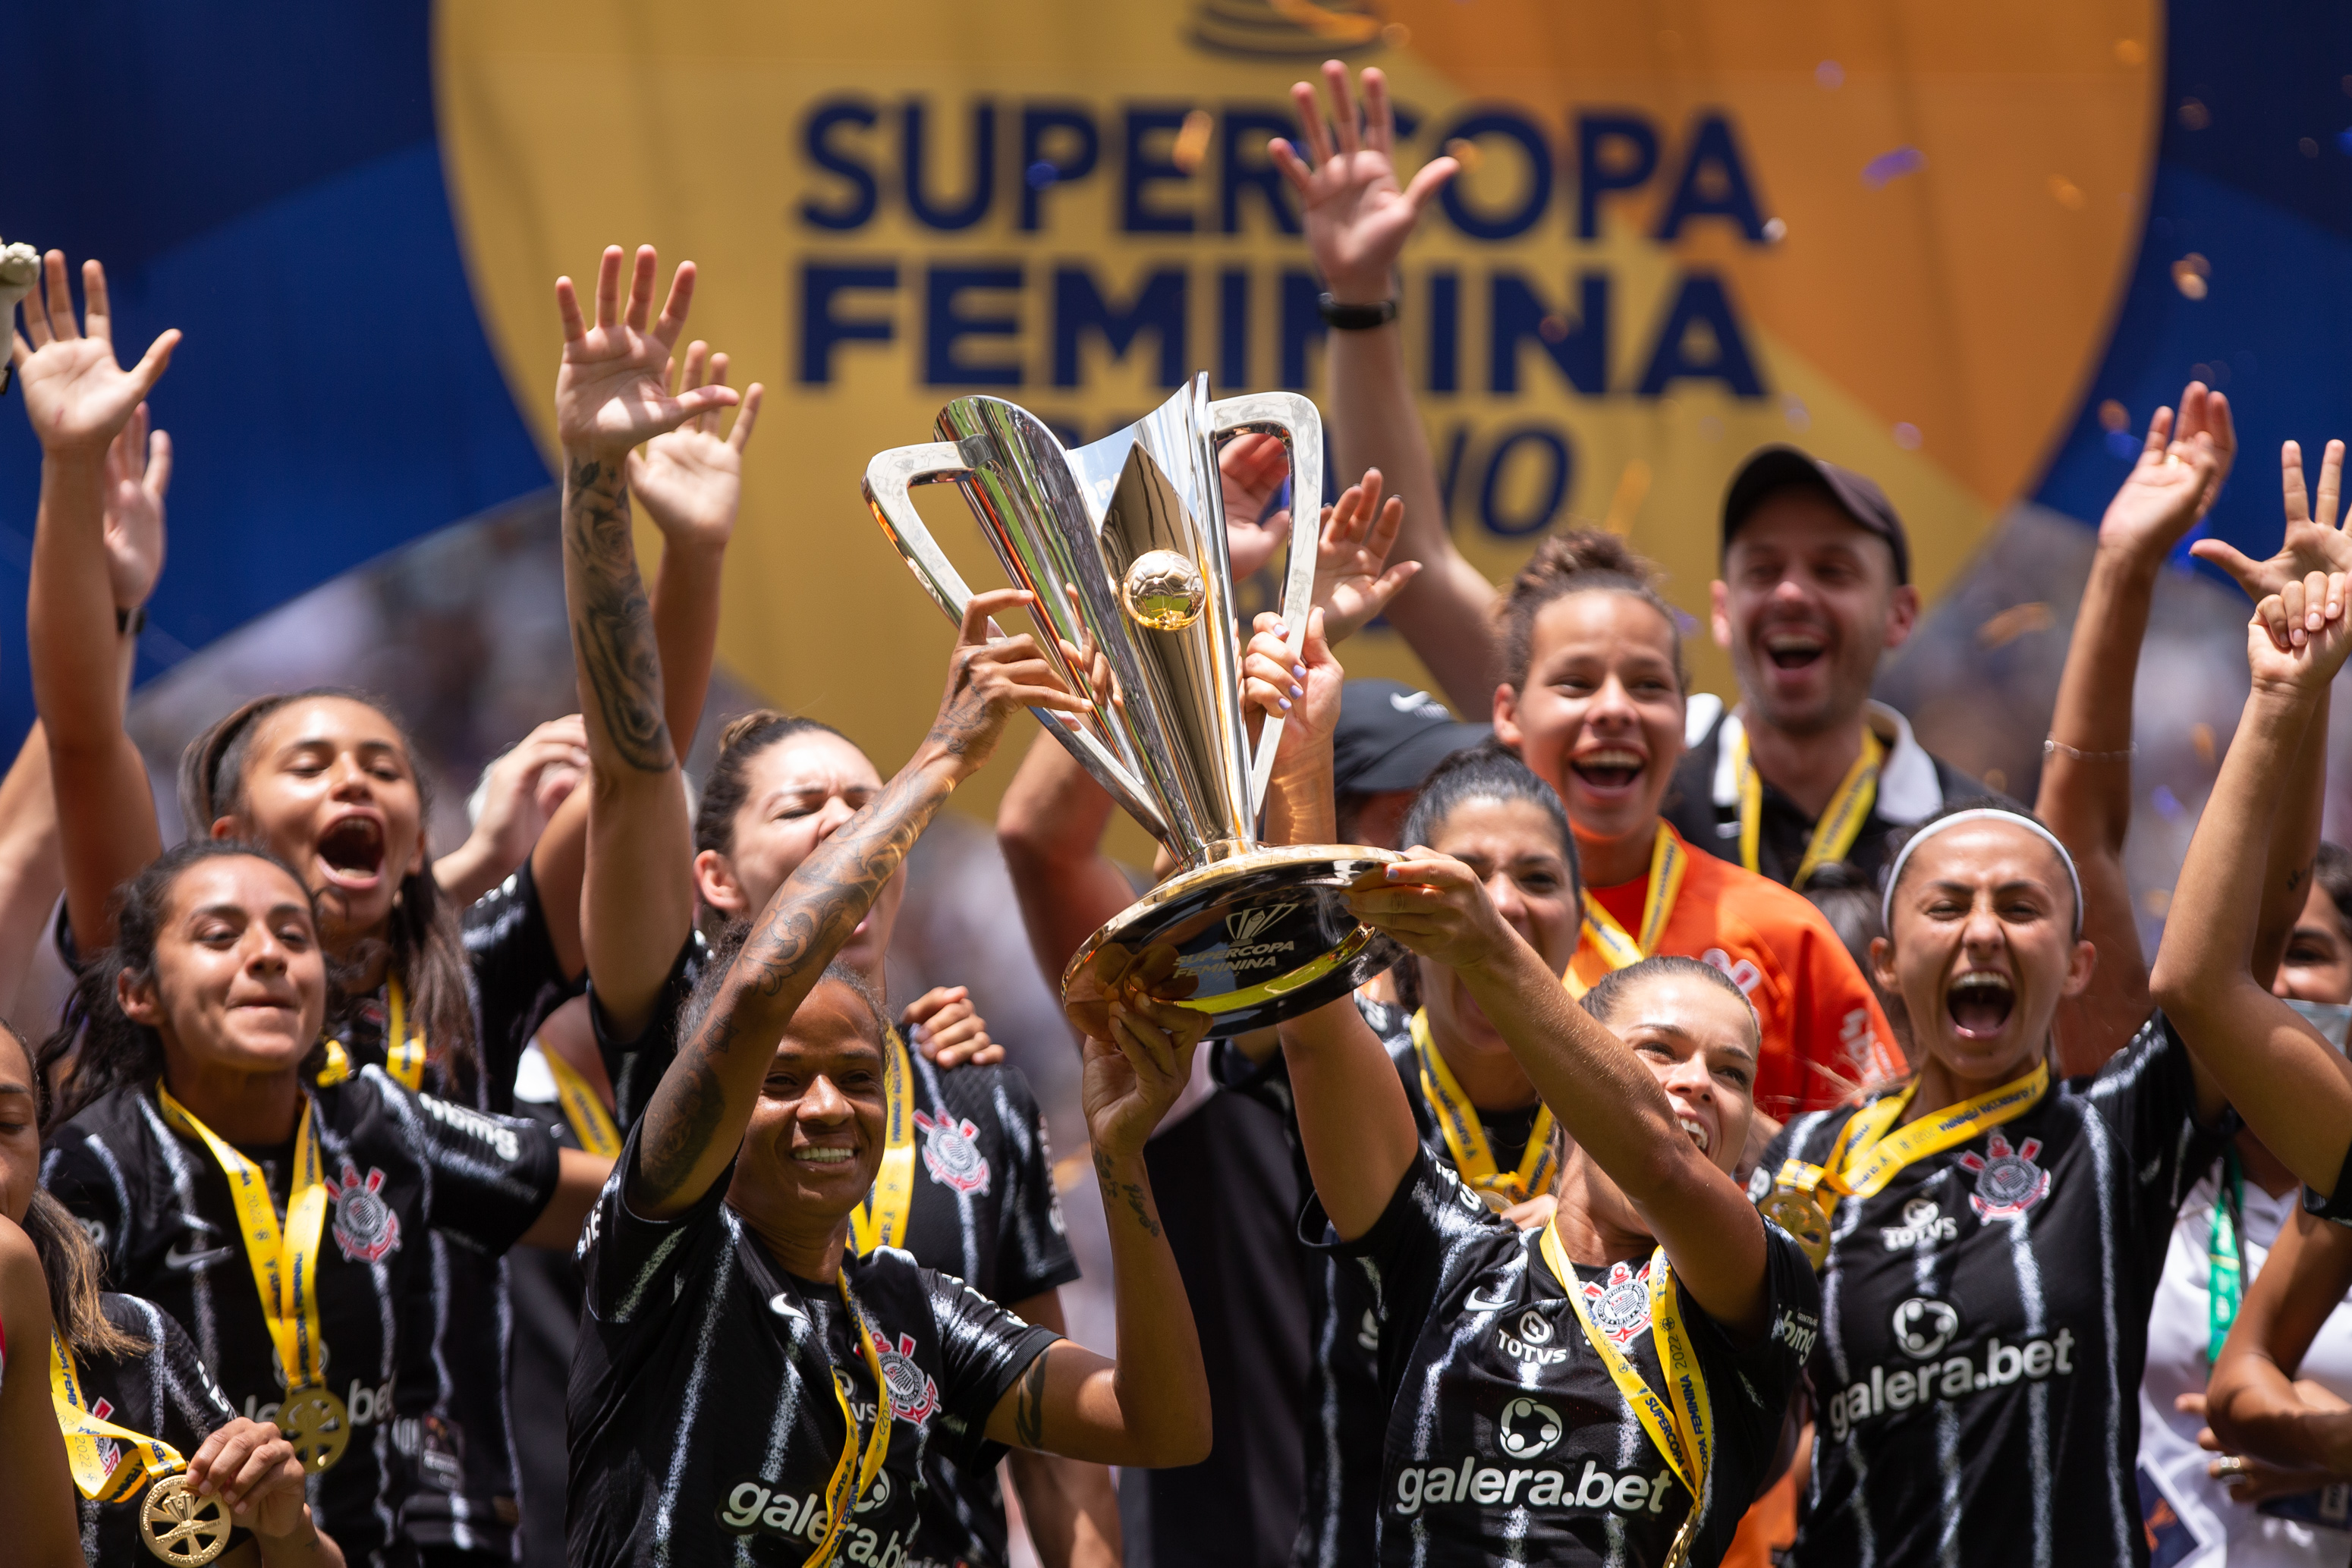 Brasileirão Feminino Neoenergia on X: O ano de 2022 será de significativas  mudanças para o futebol feminino brasileiro. Confira detalhes das três  divisões do Campeonato Brasileiro do ano que vem. #BrasileiraoFeminino 🇧🇷